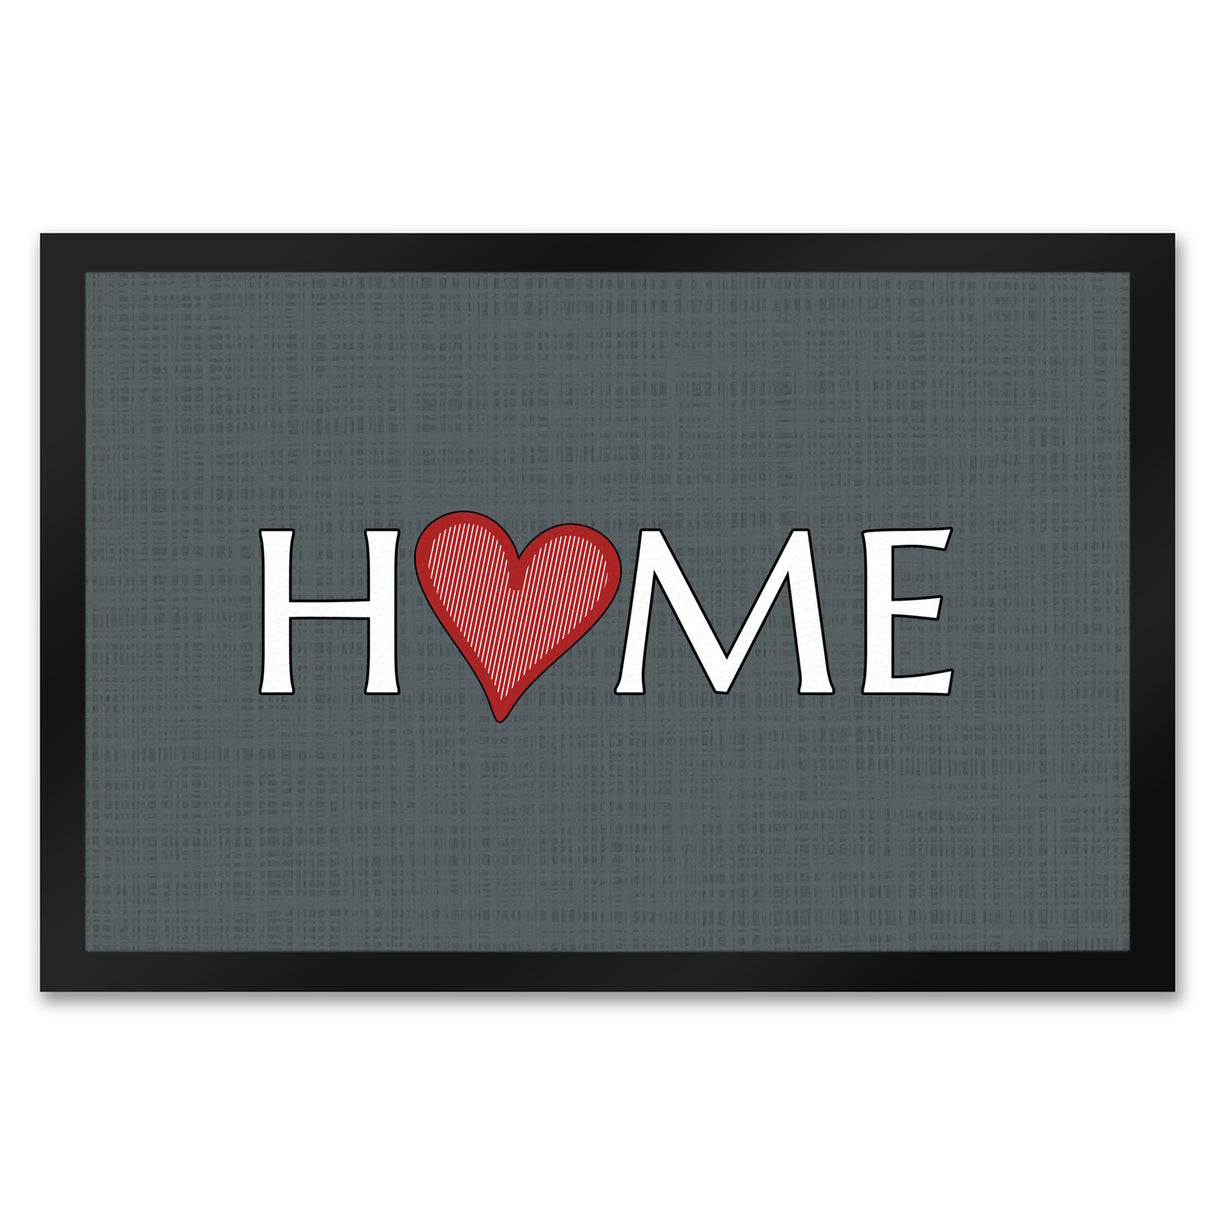 Fußmatte in 35x50 cm in dunkelgrau mit Spruch und Symbol Home und Herz